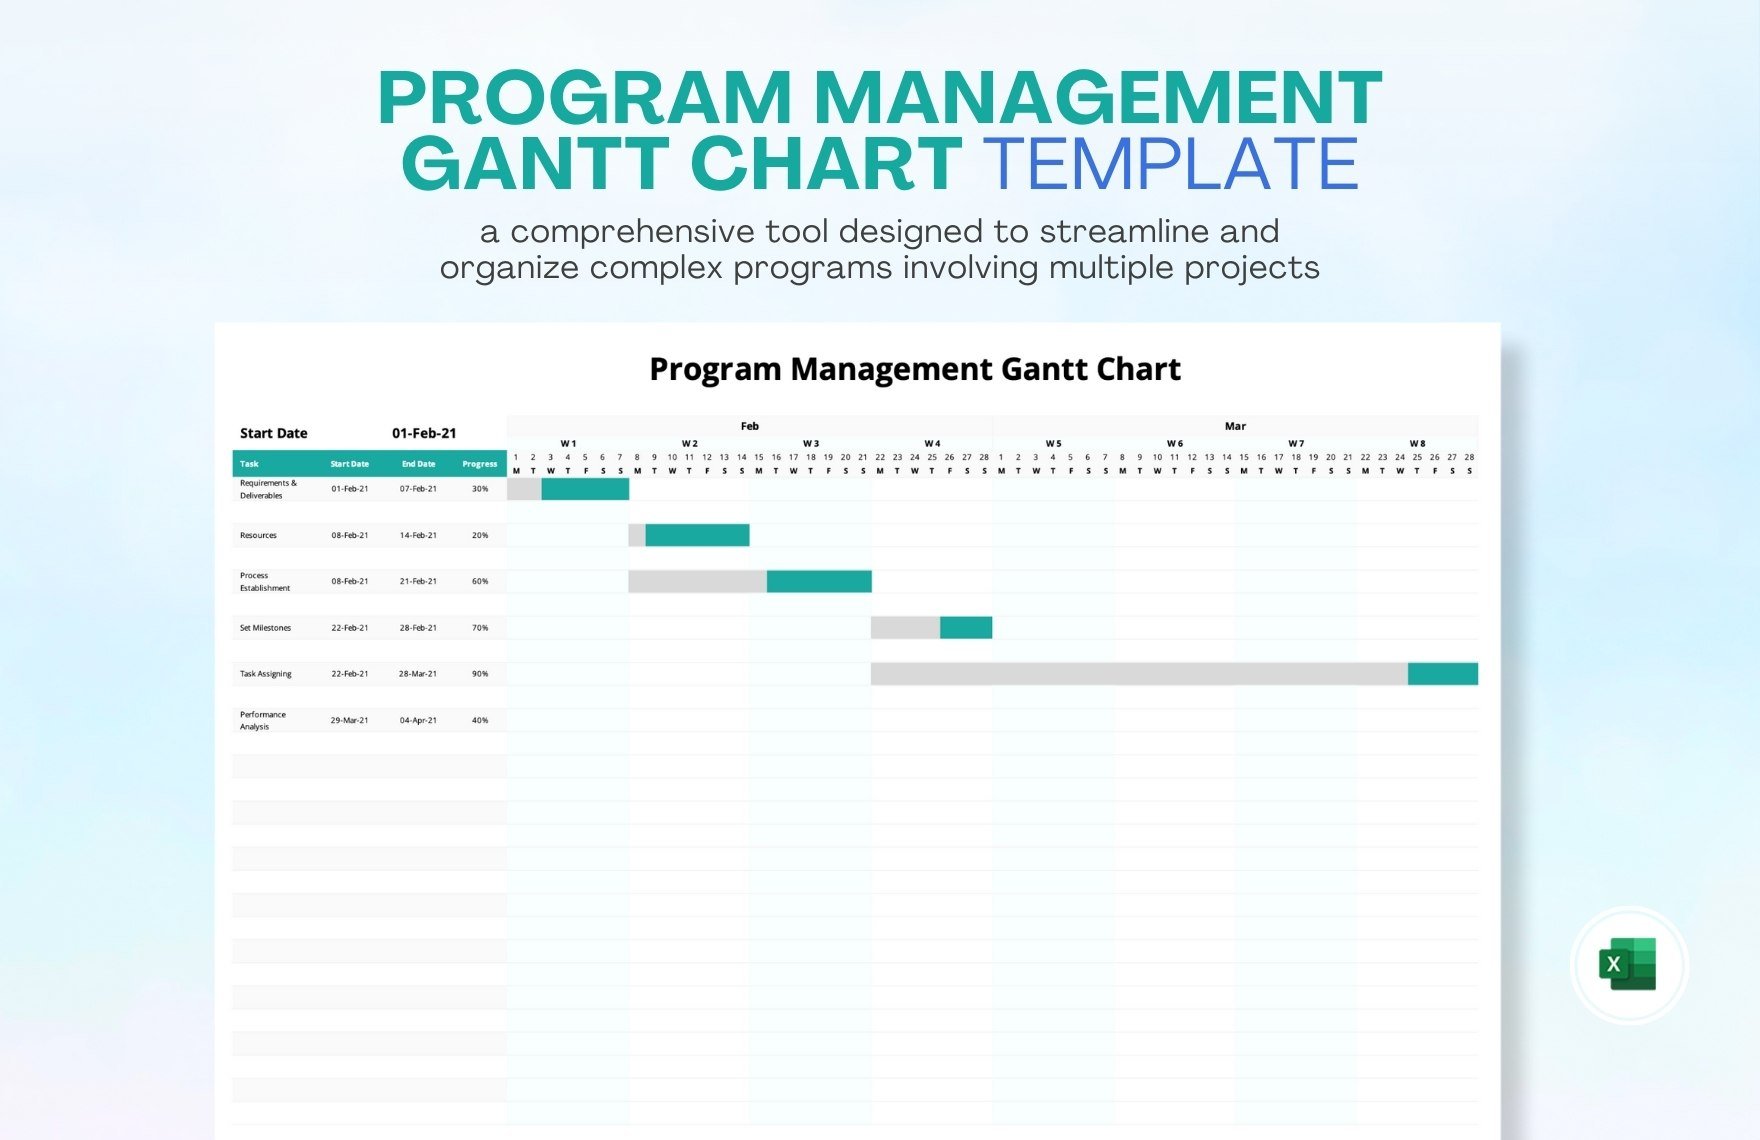 Program Management Gantt Chart Template